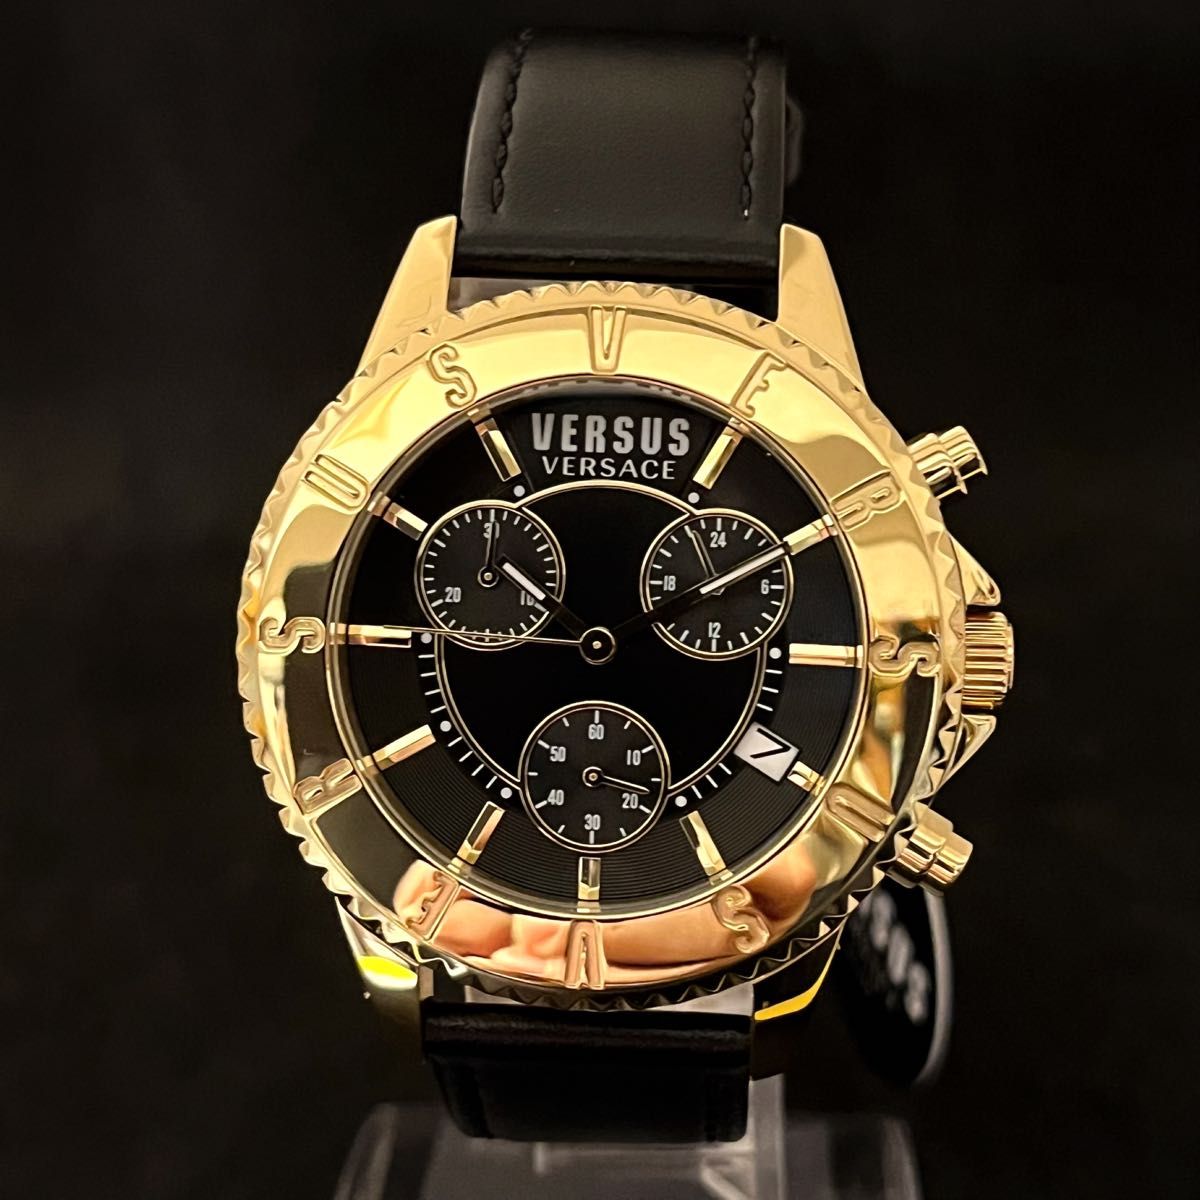 【超ゴージャス】Versus Versace/ベルサス ベルサーチ/メンズ腕時計/プレゼントに/男性用/ヴェルサス ヴェルサーチ